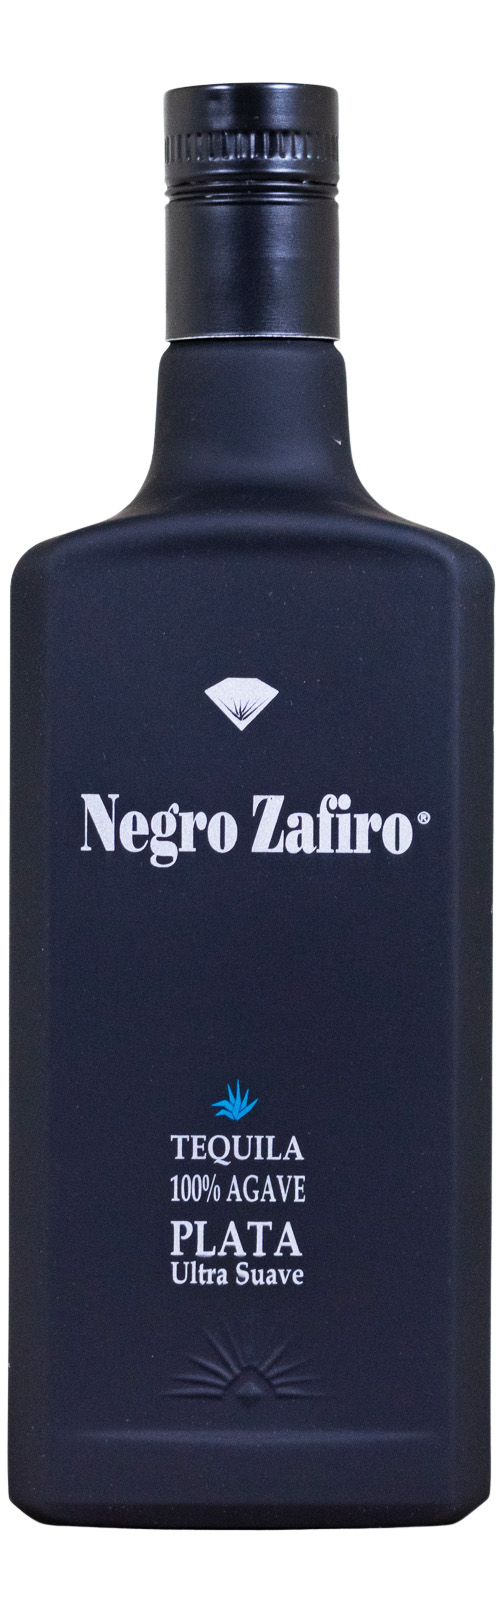 Negro Zafiro Tequila - 0,7L 40% vol